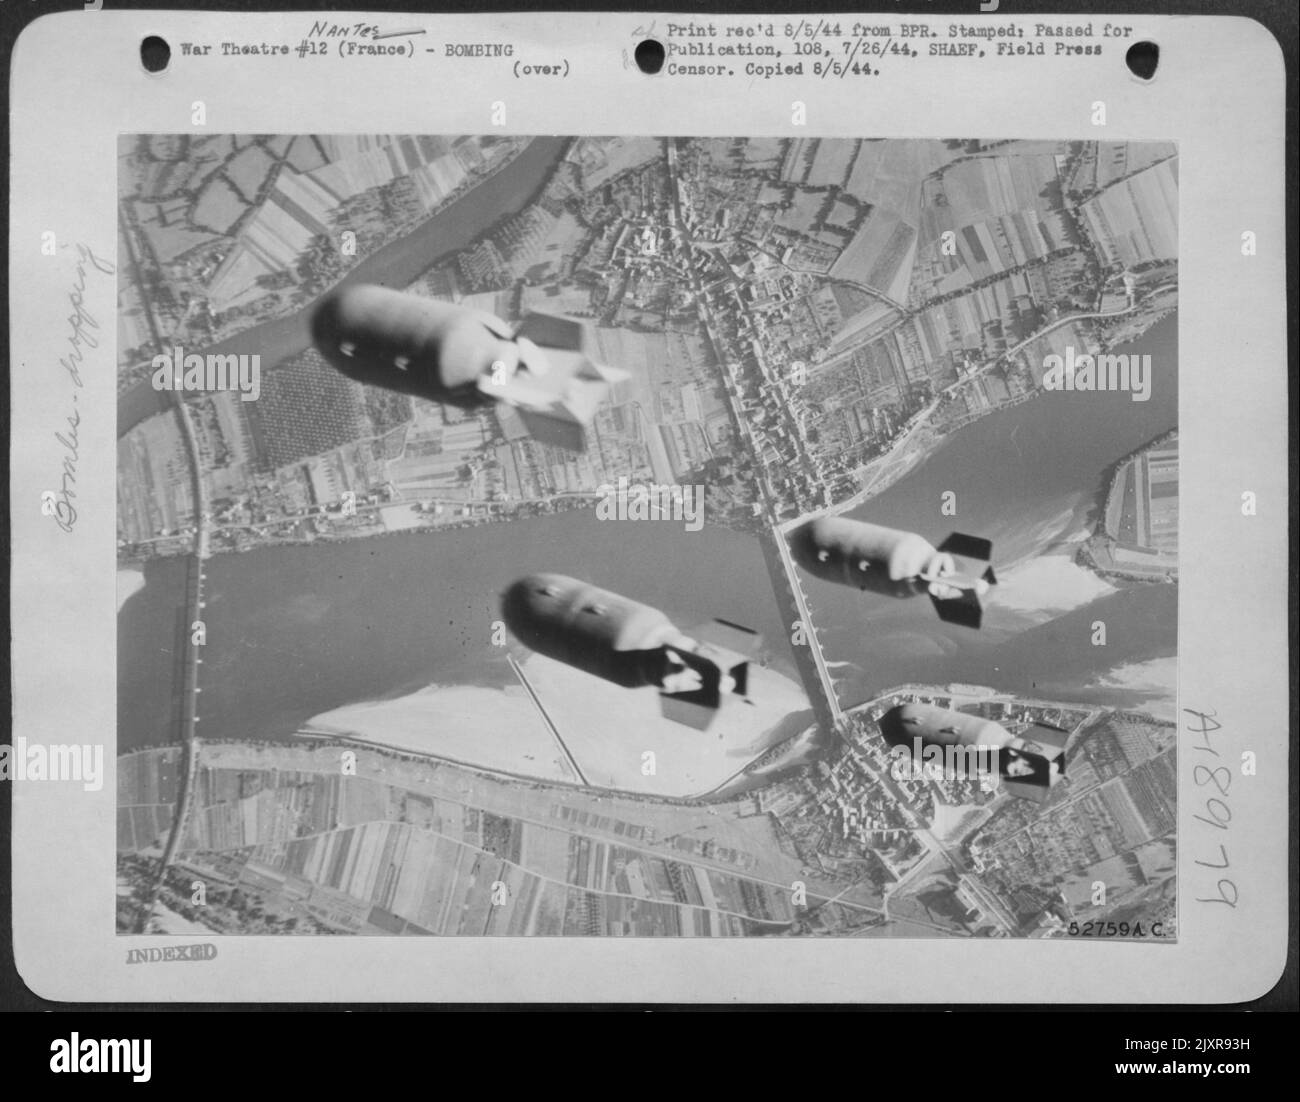 Hier treffen auf der Eisenbahnbrücke Les Ponts de CE, 55 Meilen östlich von Nantes, in Frankreich, vier eintausend-Pfund-Bomben aus der Bombenbucht eines mittleren Luftwaffenbombers von 9. Air Force Marauder aufeinander. Es ist die Brücke im unteren Teil dieses Fotos, und die Ergebnisse von Stockfoto